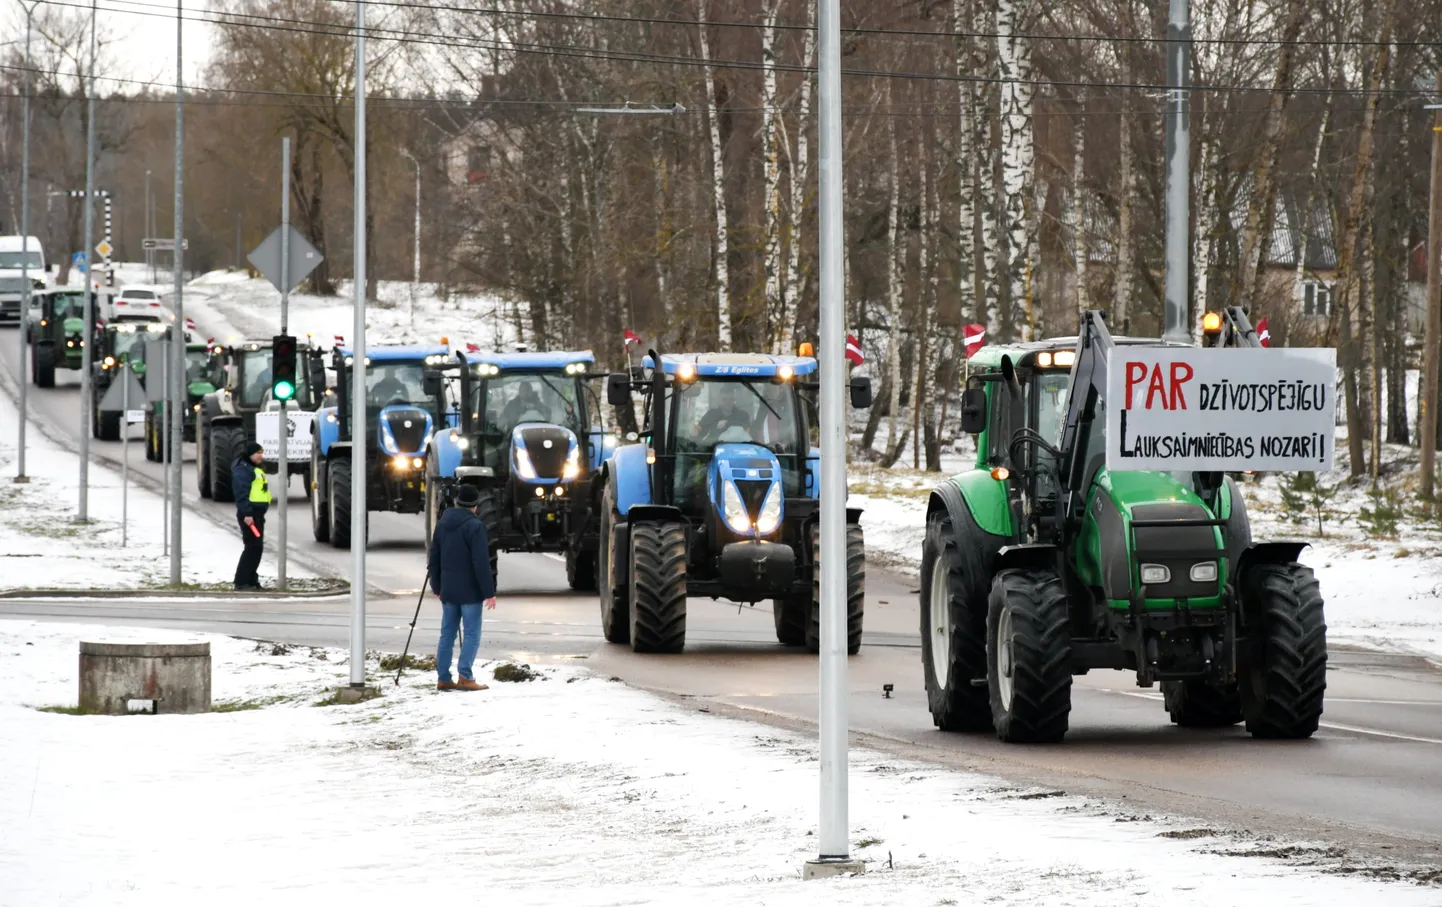 Lauksaimnieku protests Daugavpilī ar mērķi panākt Krievijas un Baltkrievijas pārtikas produktu tūlītēja importa aizliegumu bez pārejas perioda, PVN samazinātās likmes 5% apmērā atjaunošanu Latvijai raksturīgajiem augļiem, ogām dārzeņiem, plašāku pieeju apdrošināšanas un apgrozāmo līdzekļu programmām, kā arī atteikšanos no nacionāla līmeņa zemes apgrūtinājumiem vai citiem zemes lietošanas ierobežojumiem.